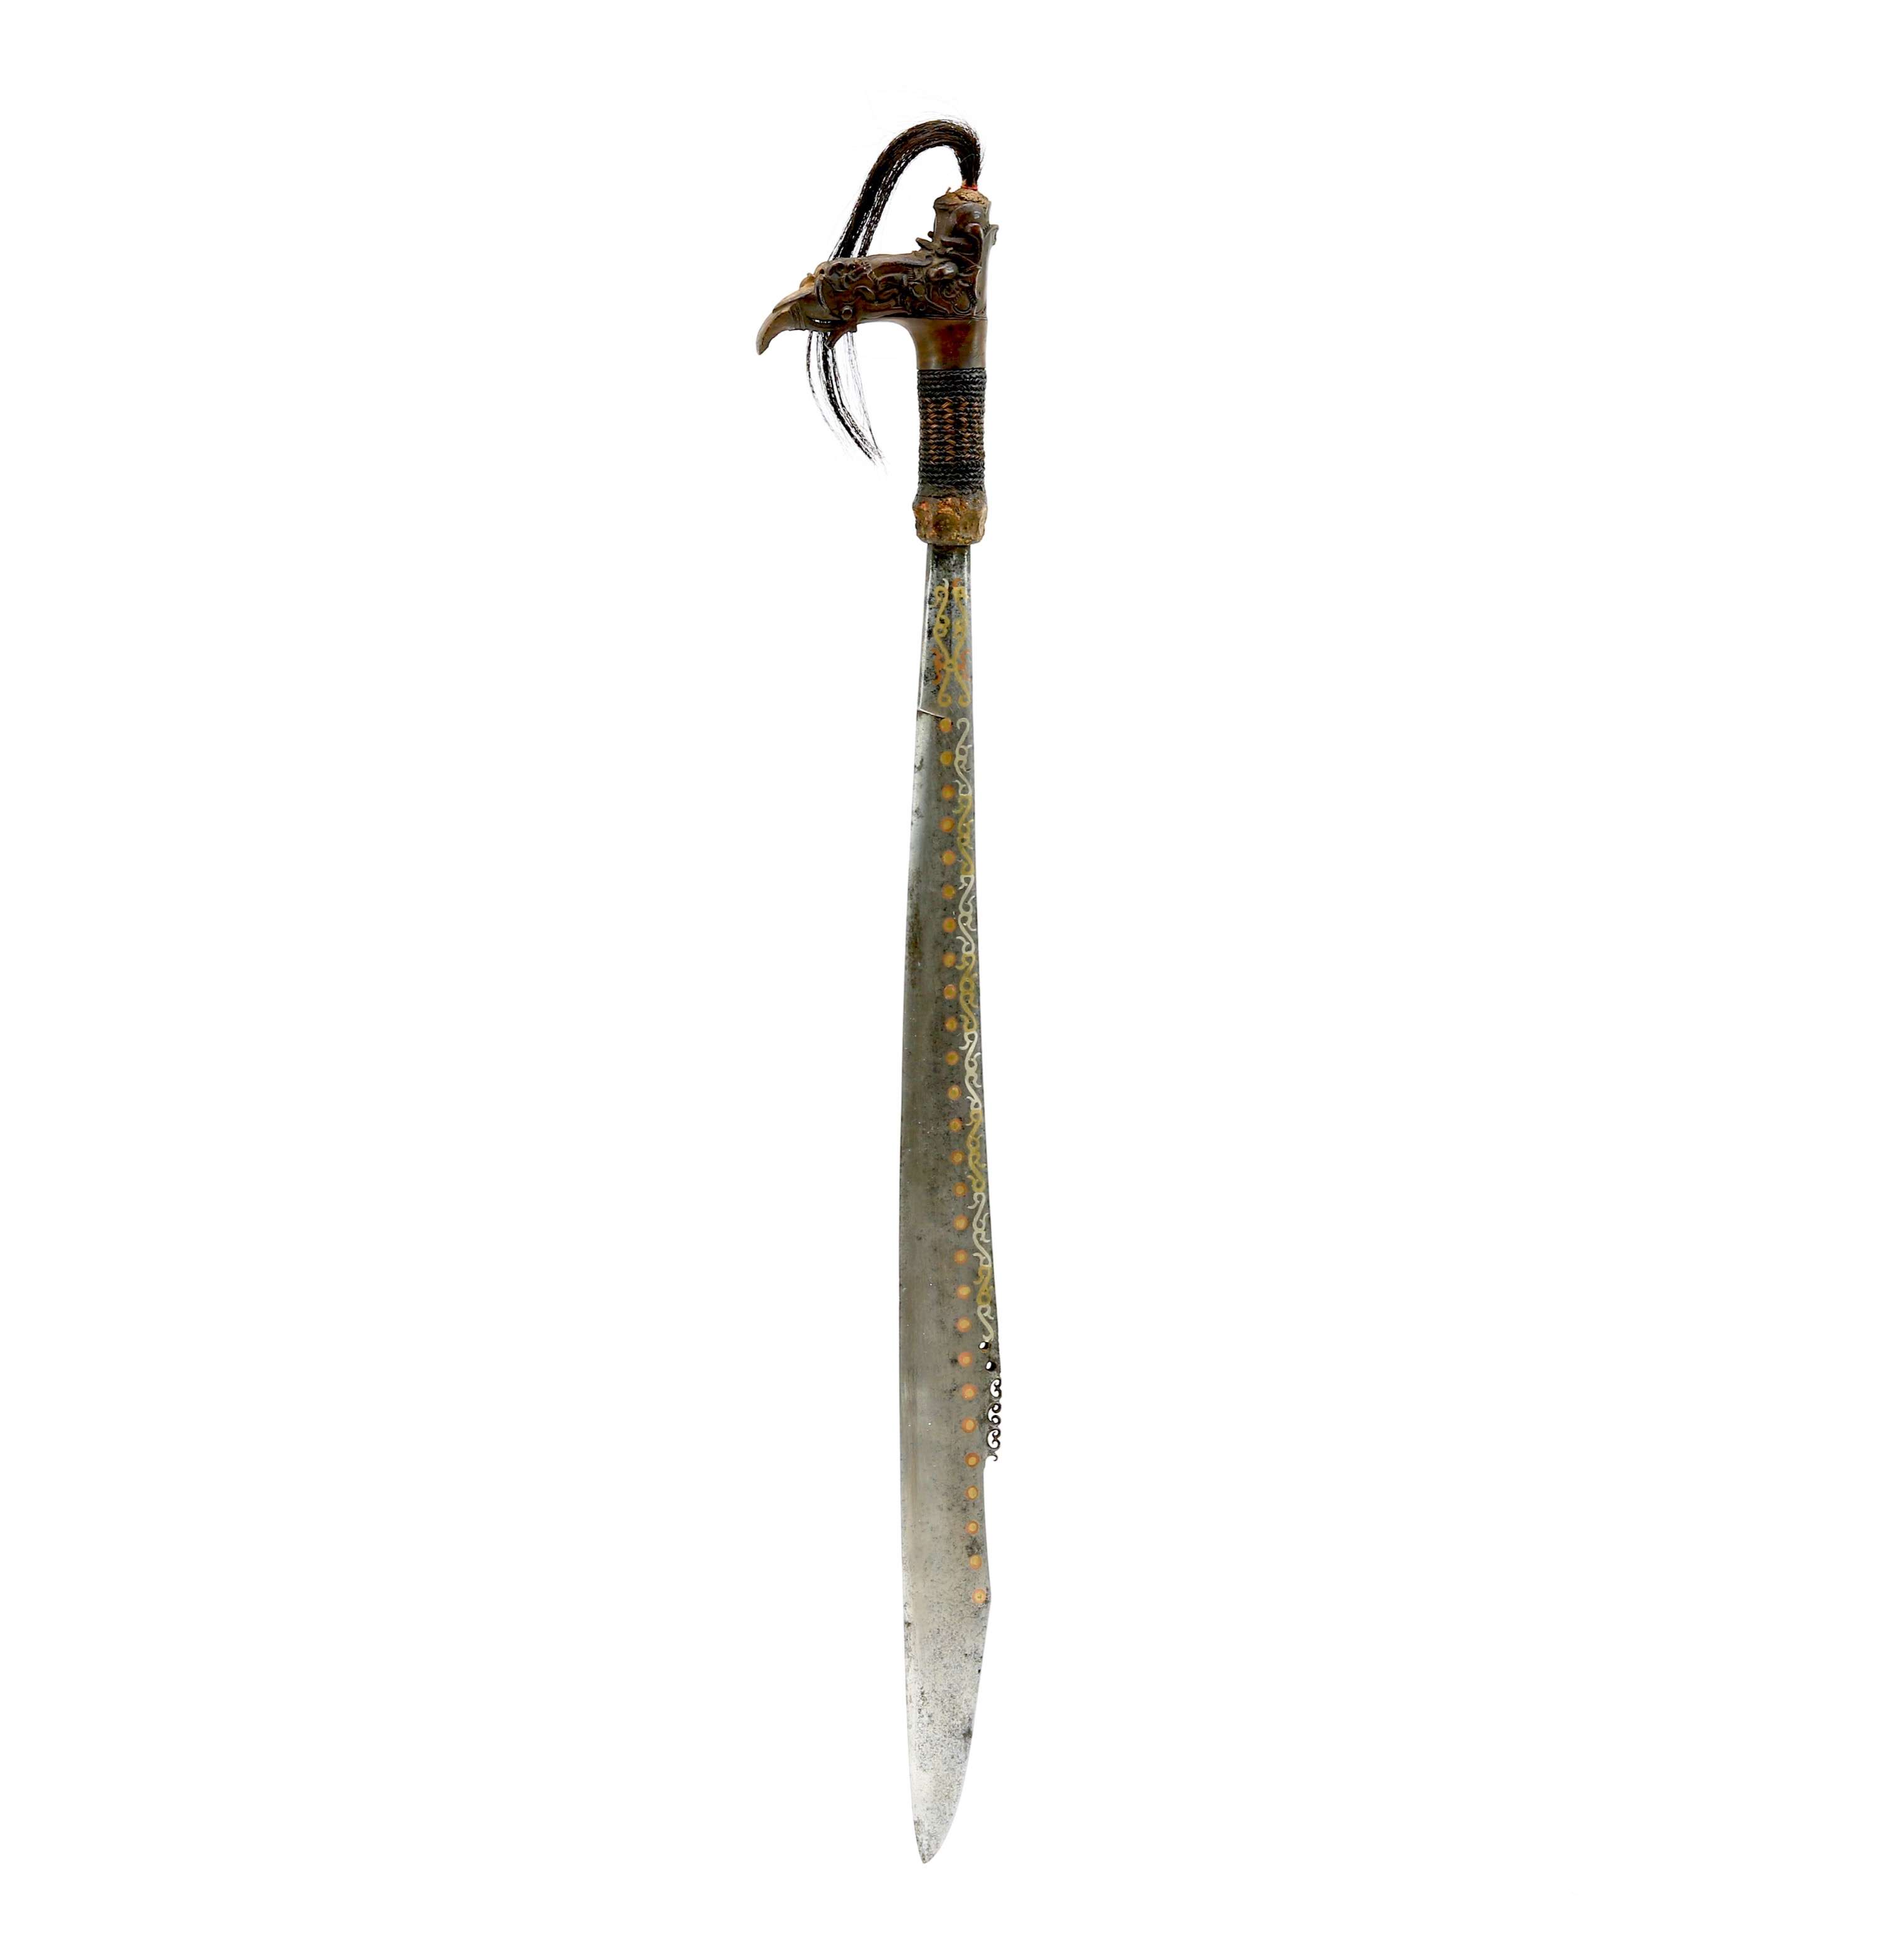 A fine silver copper brass inlaid mandau sword